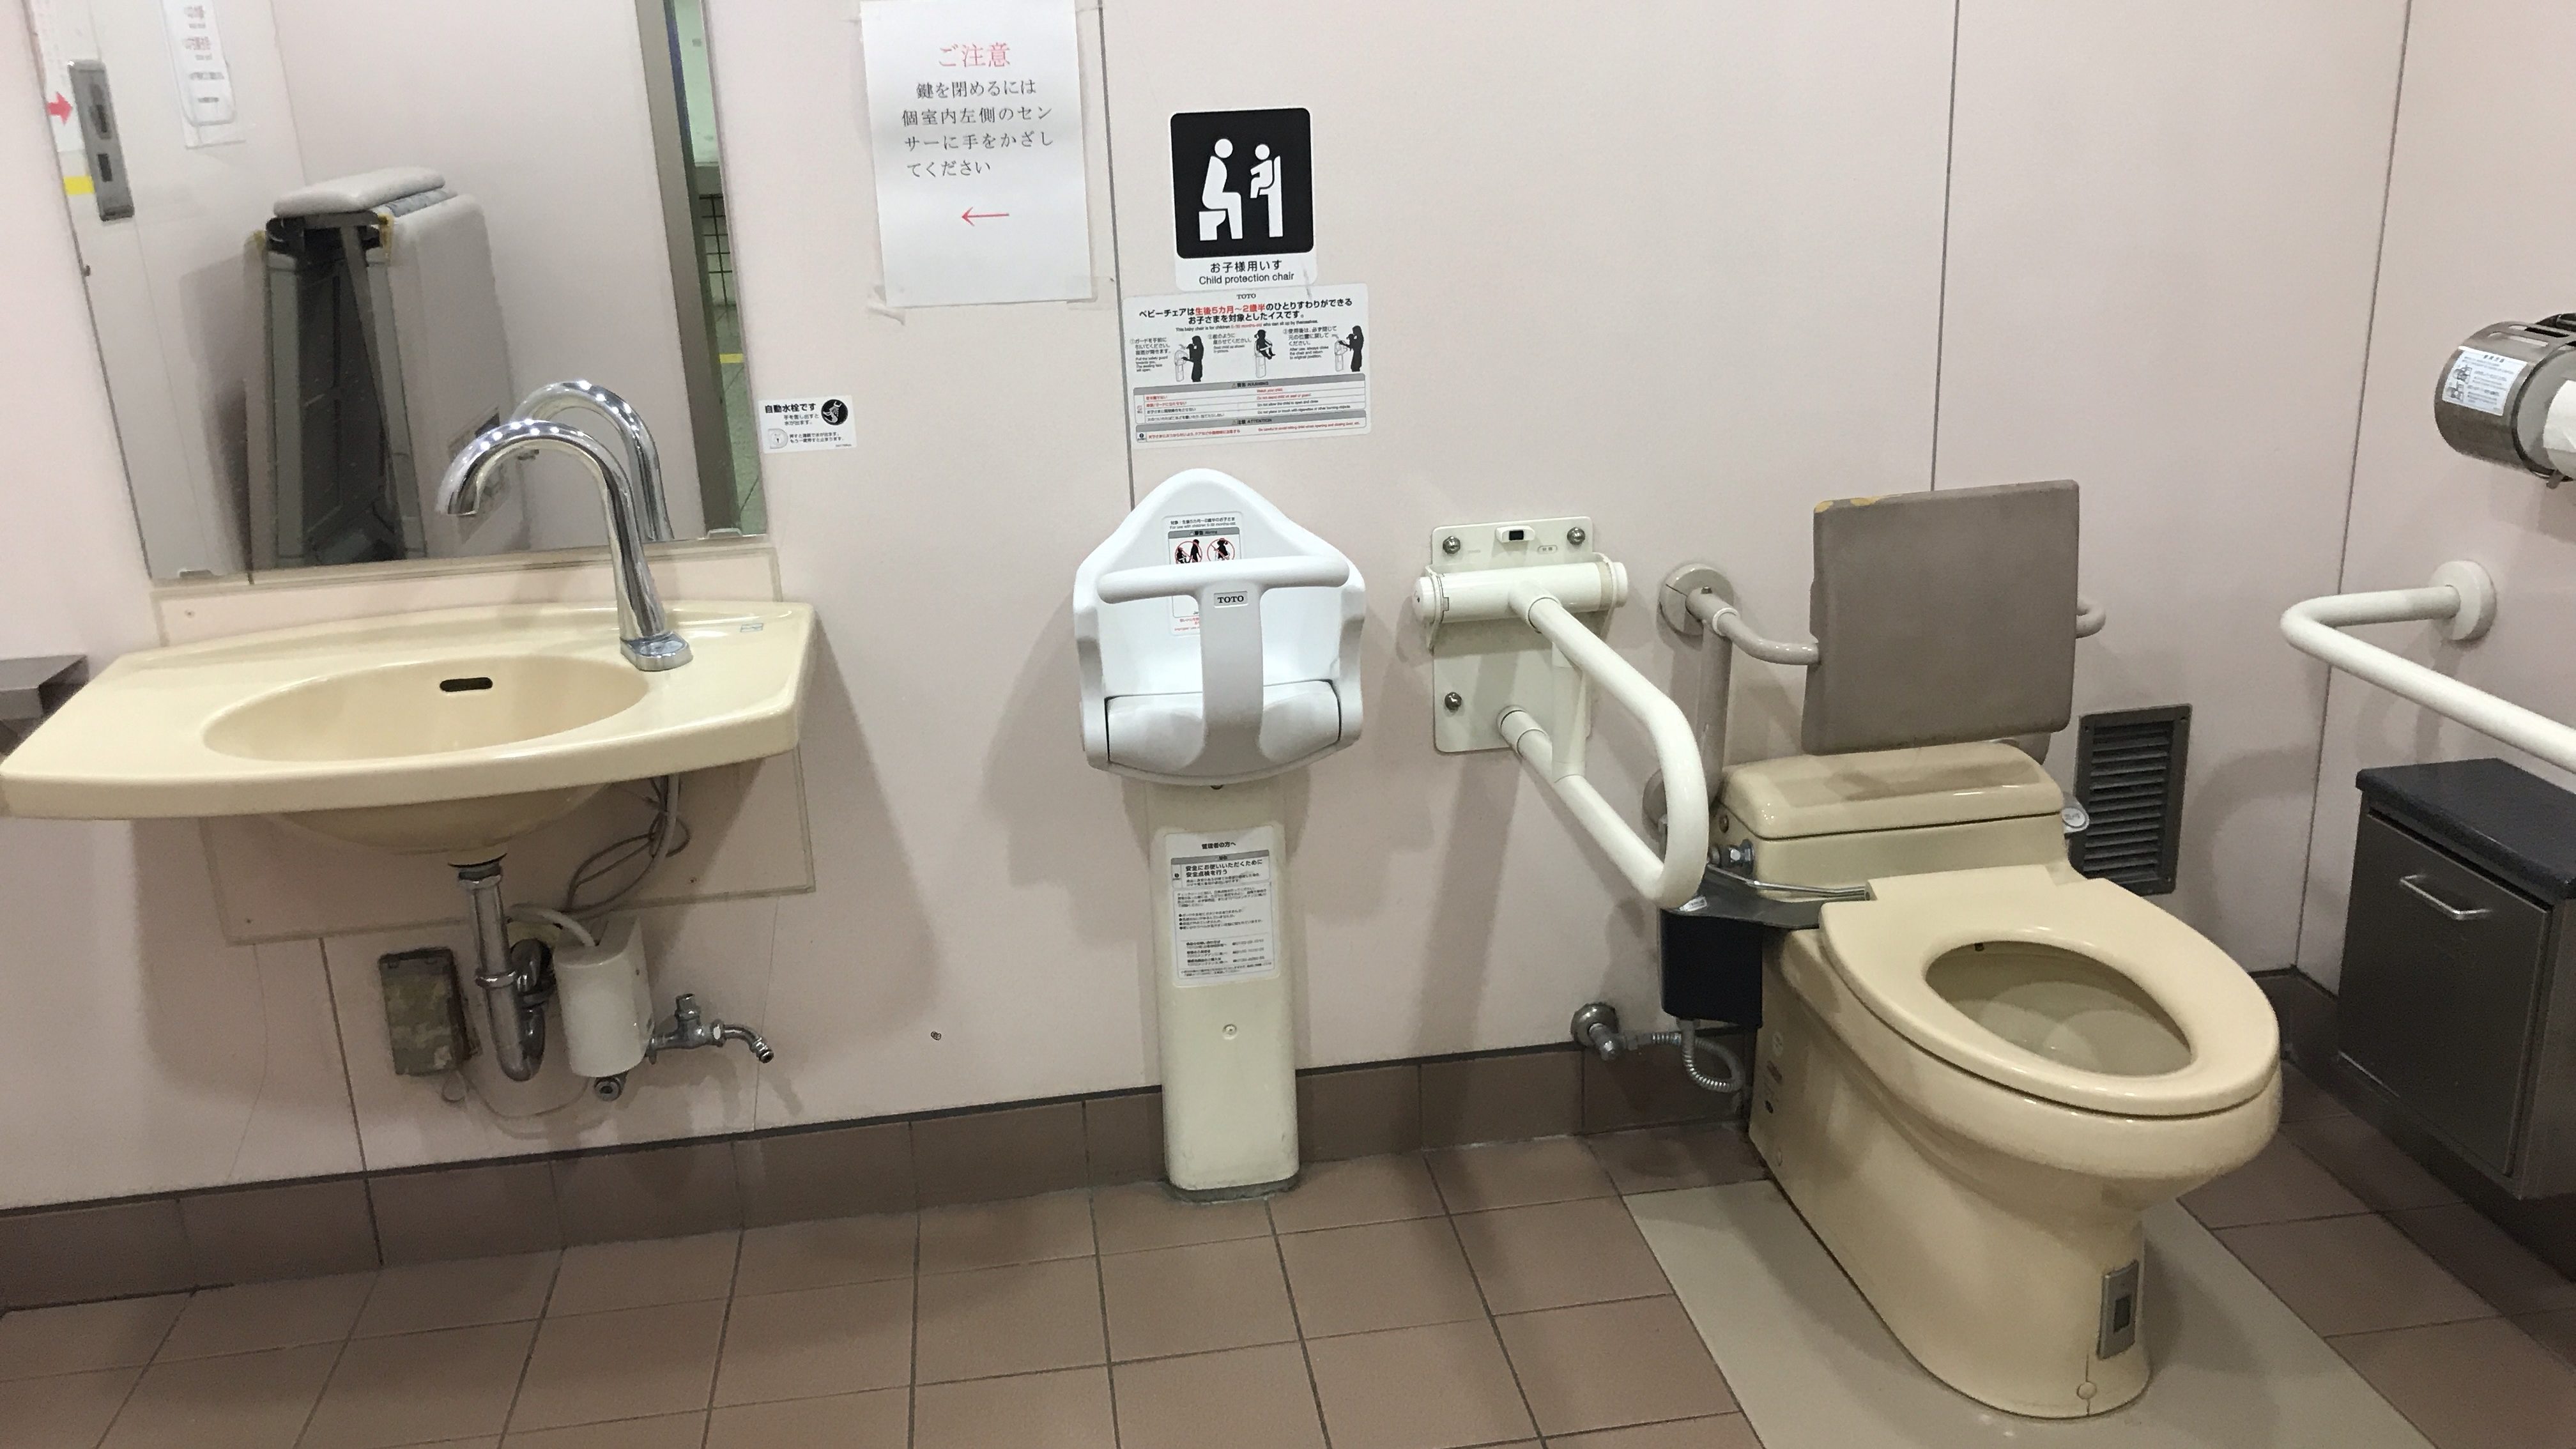 京王線「聖蹟桜ヶ丘駅」内にある「誰でもトイレ」